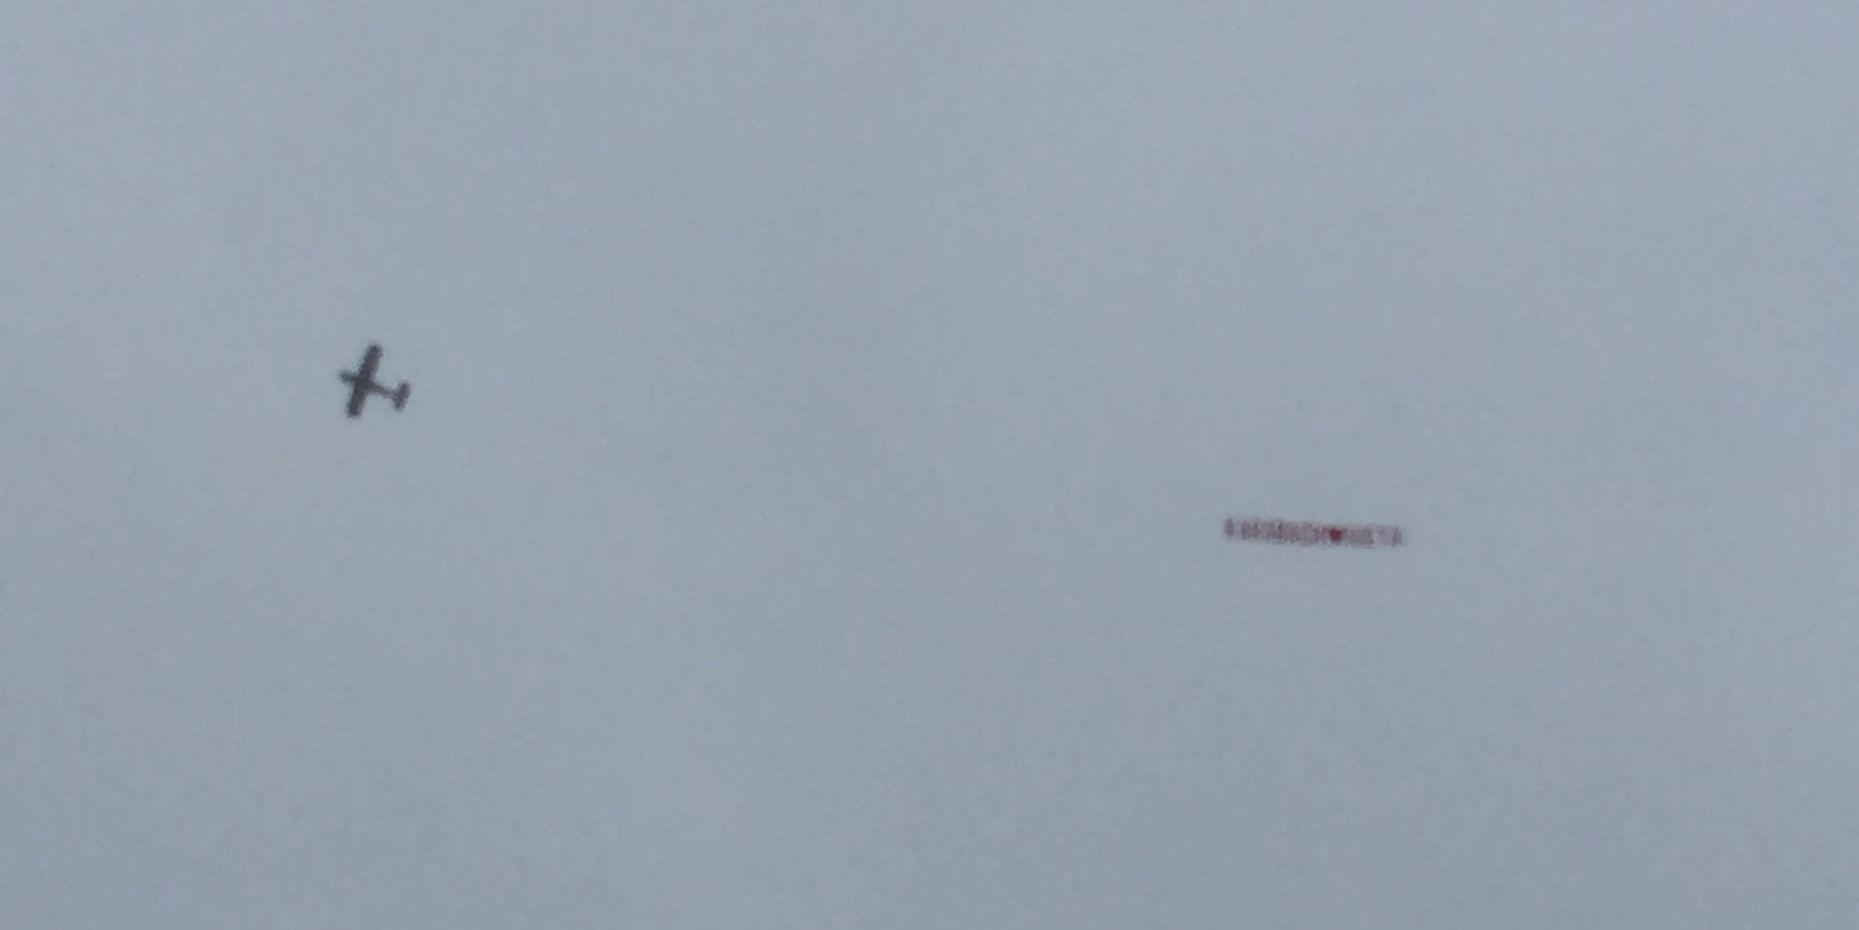 Ett flygplan med banderoll med texten "Karabach hjärta Ivana" cirklade över Globen.